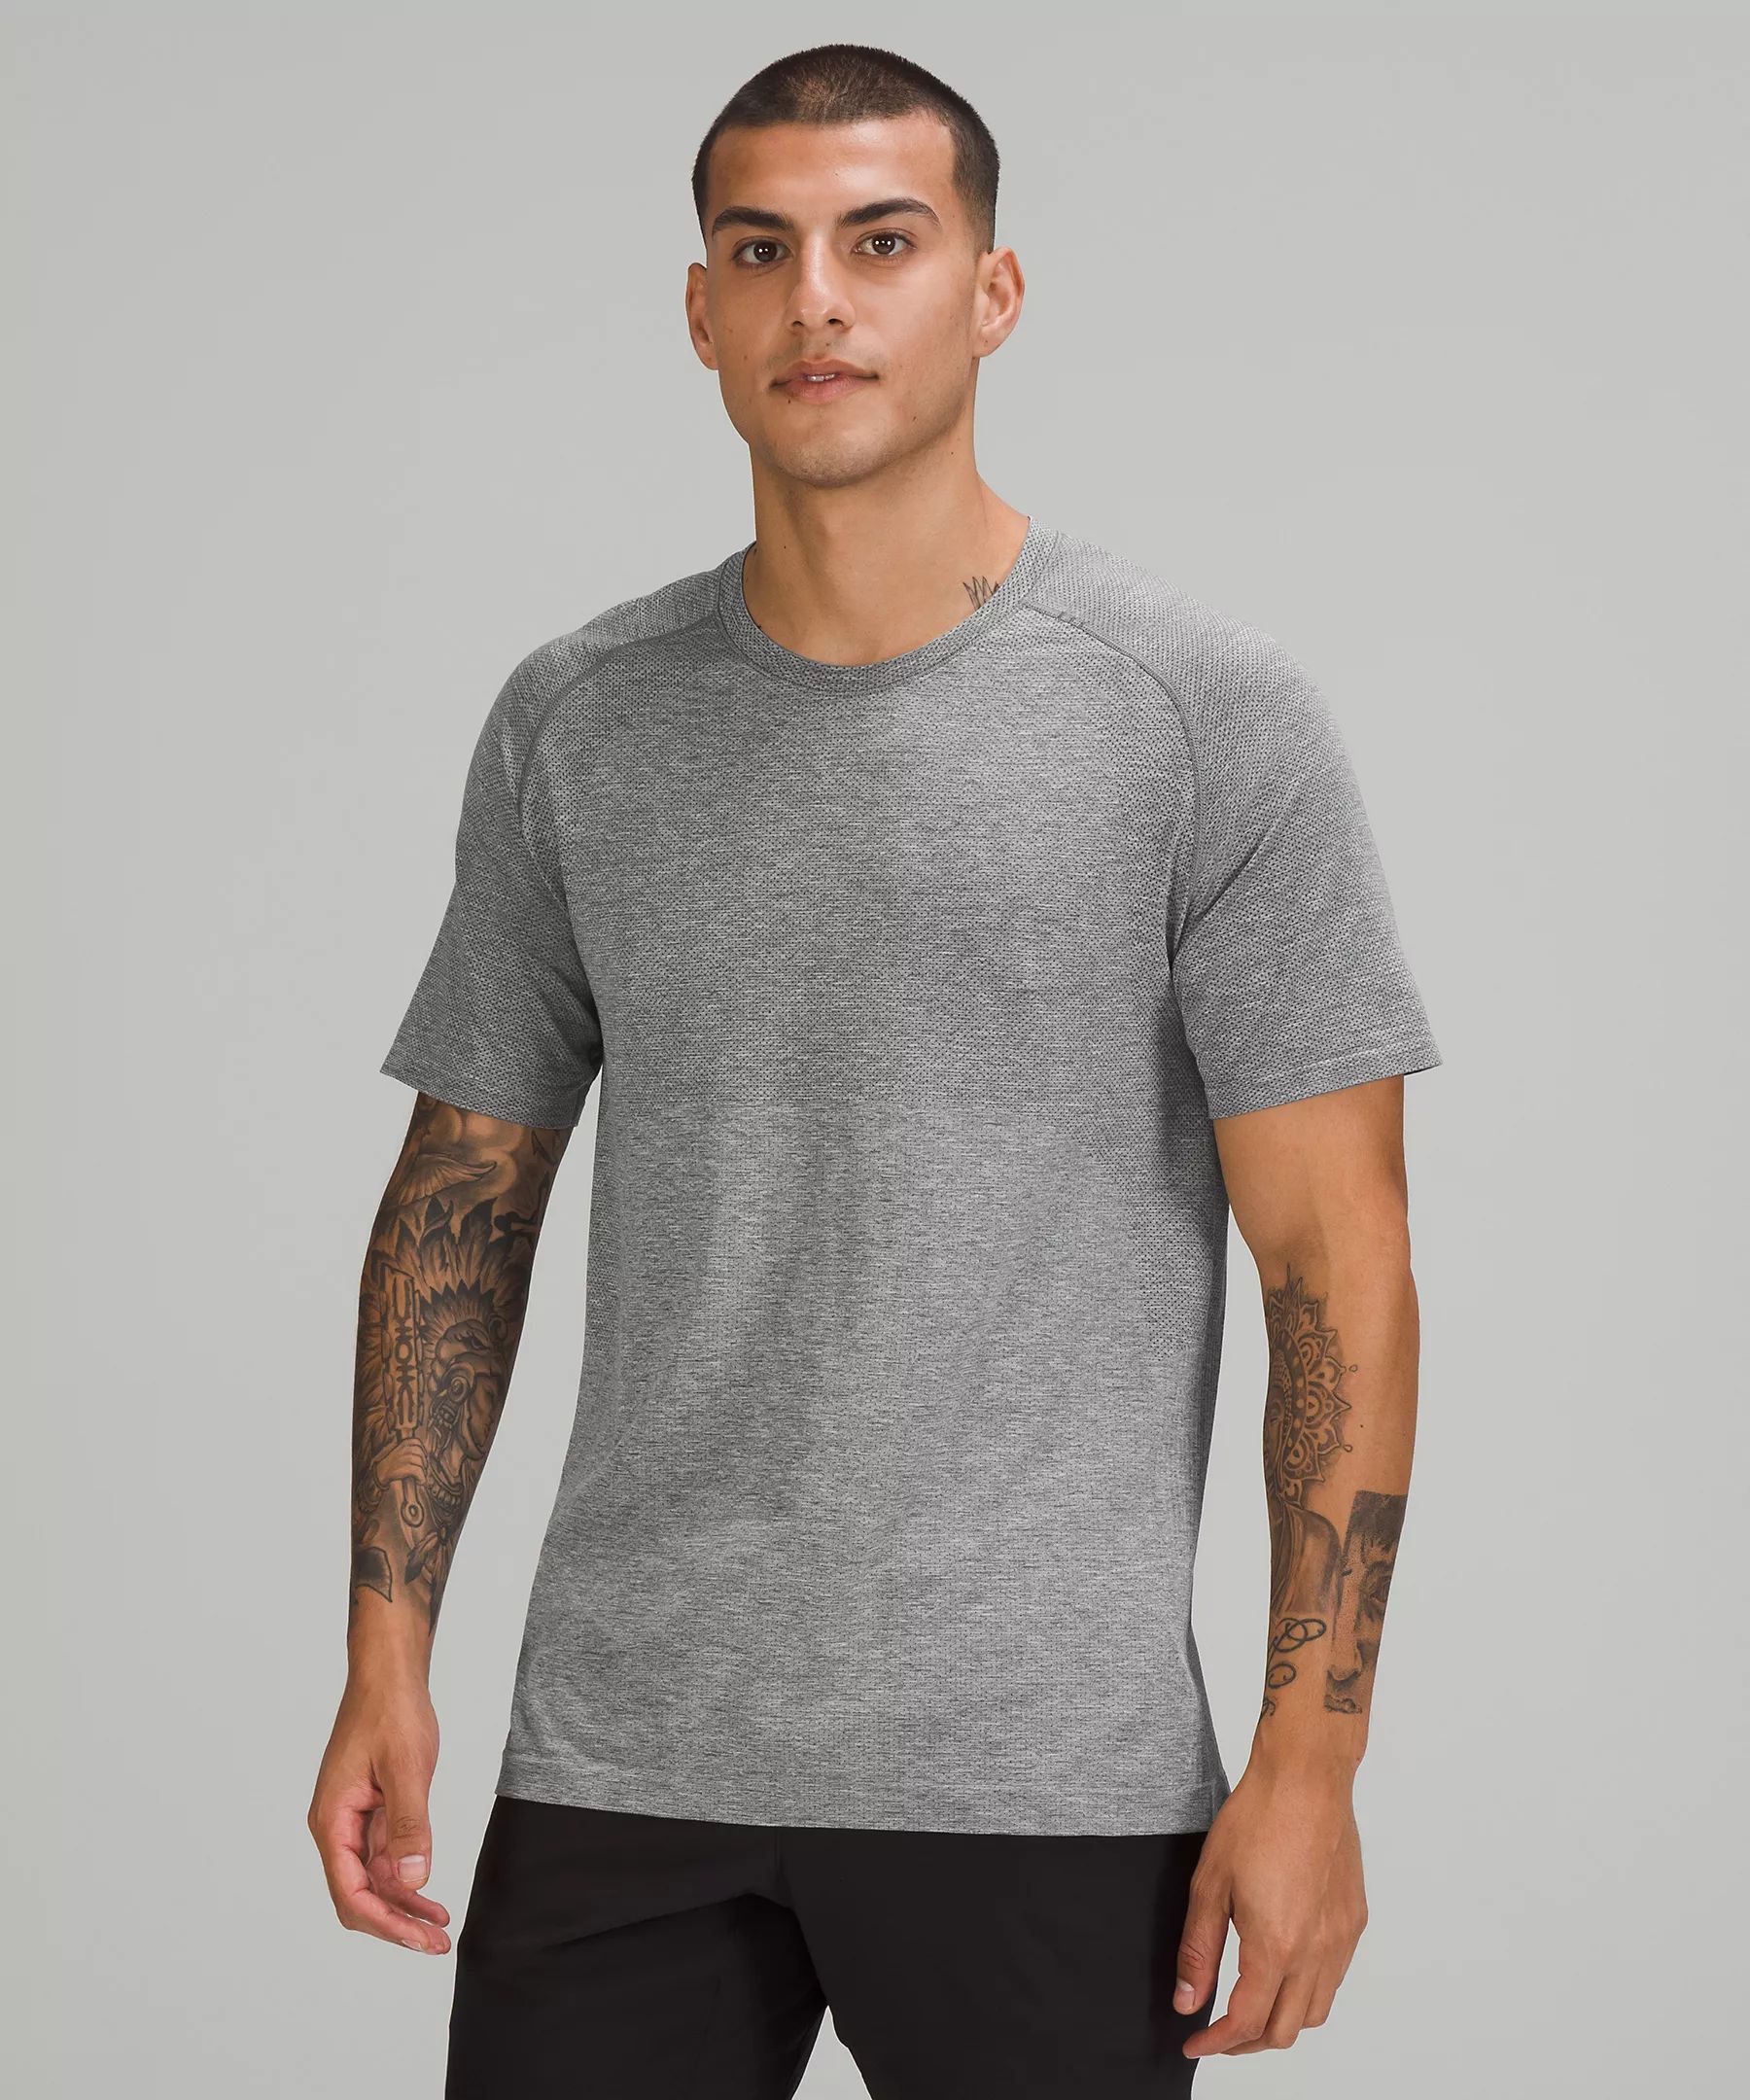 Metal Vent Tech Short-Sleeve Shirt 2.0 | Lululemon (US)